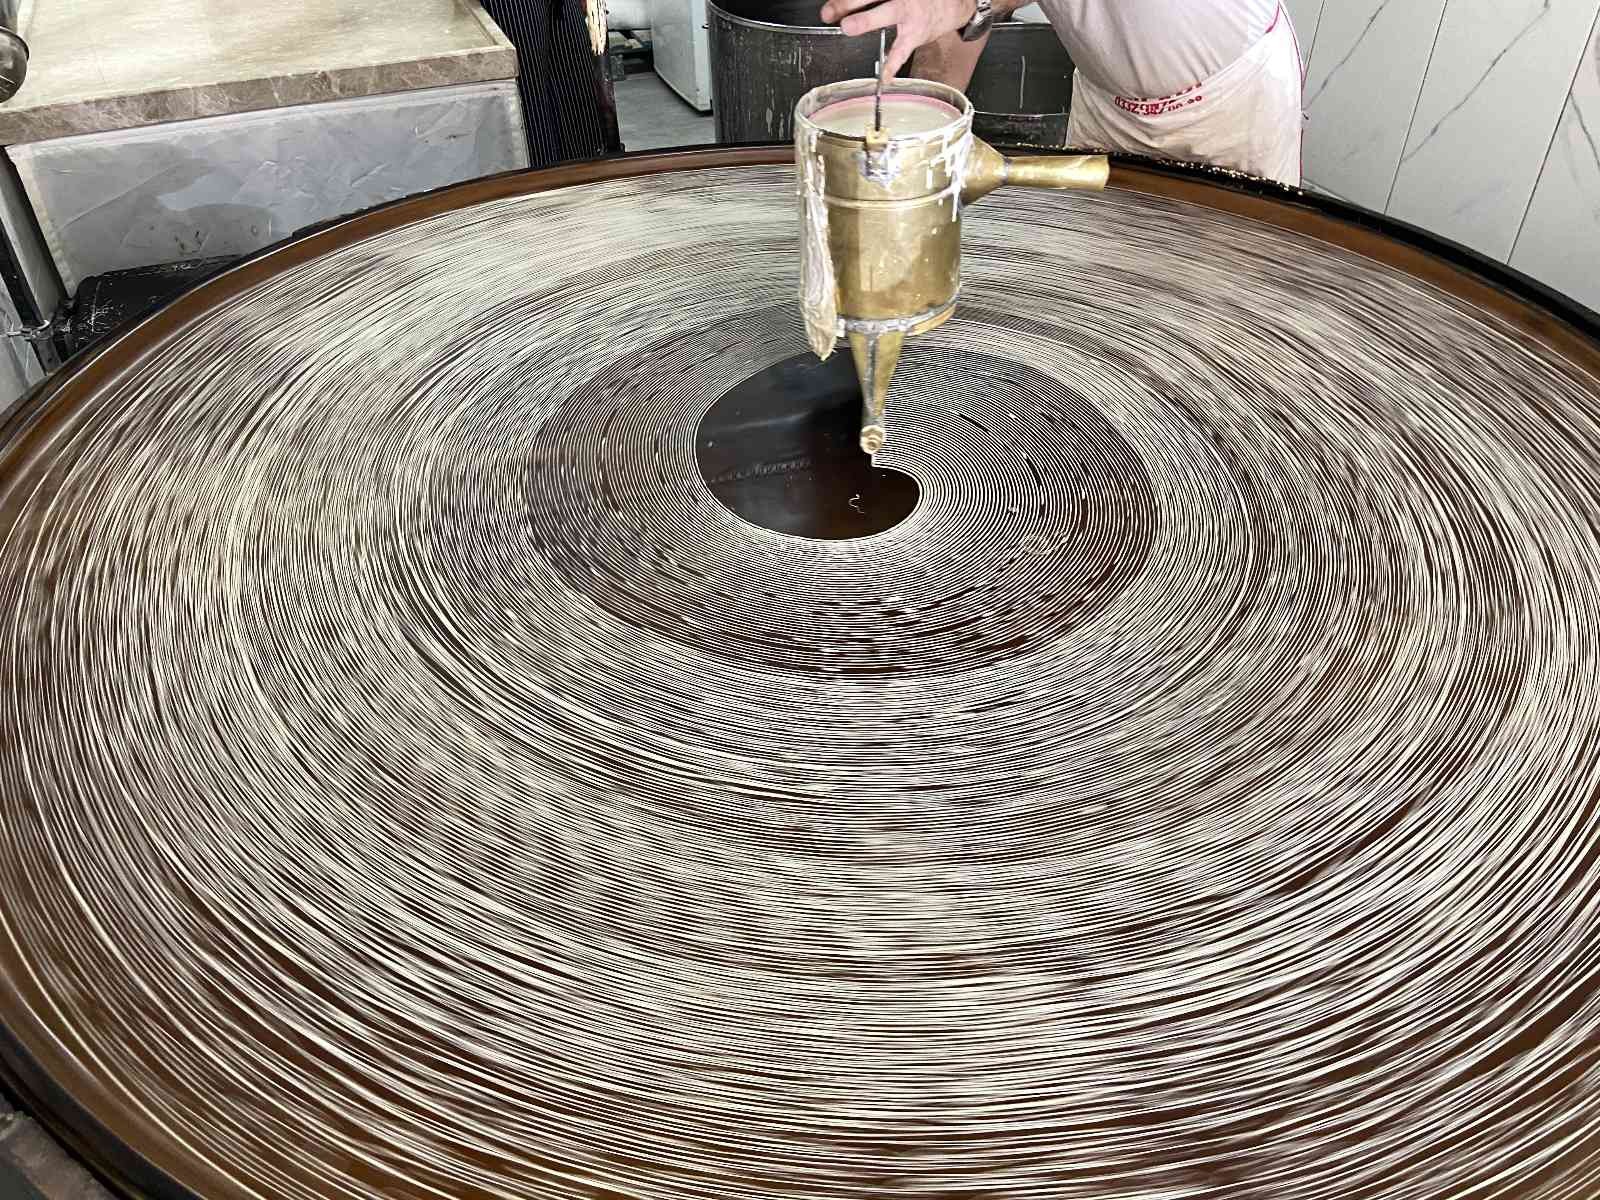 Konya'da geleneksel yöntemlerle üretilen tel kadayıf sofraları tatlandırıyor